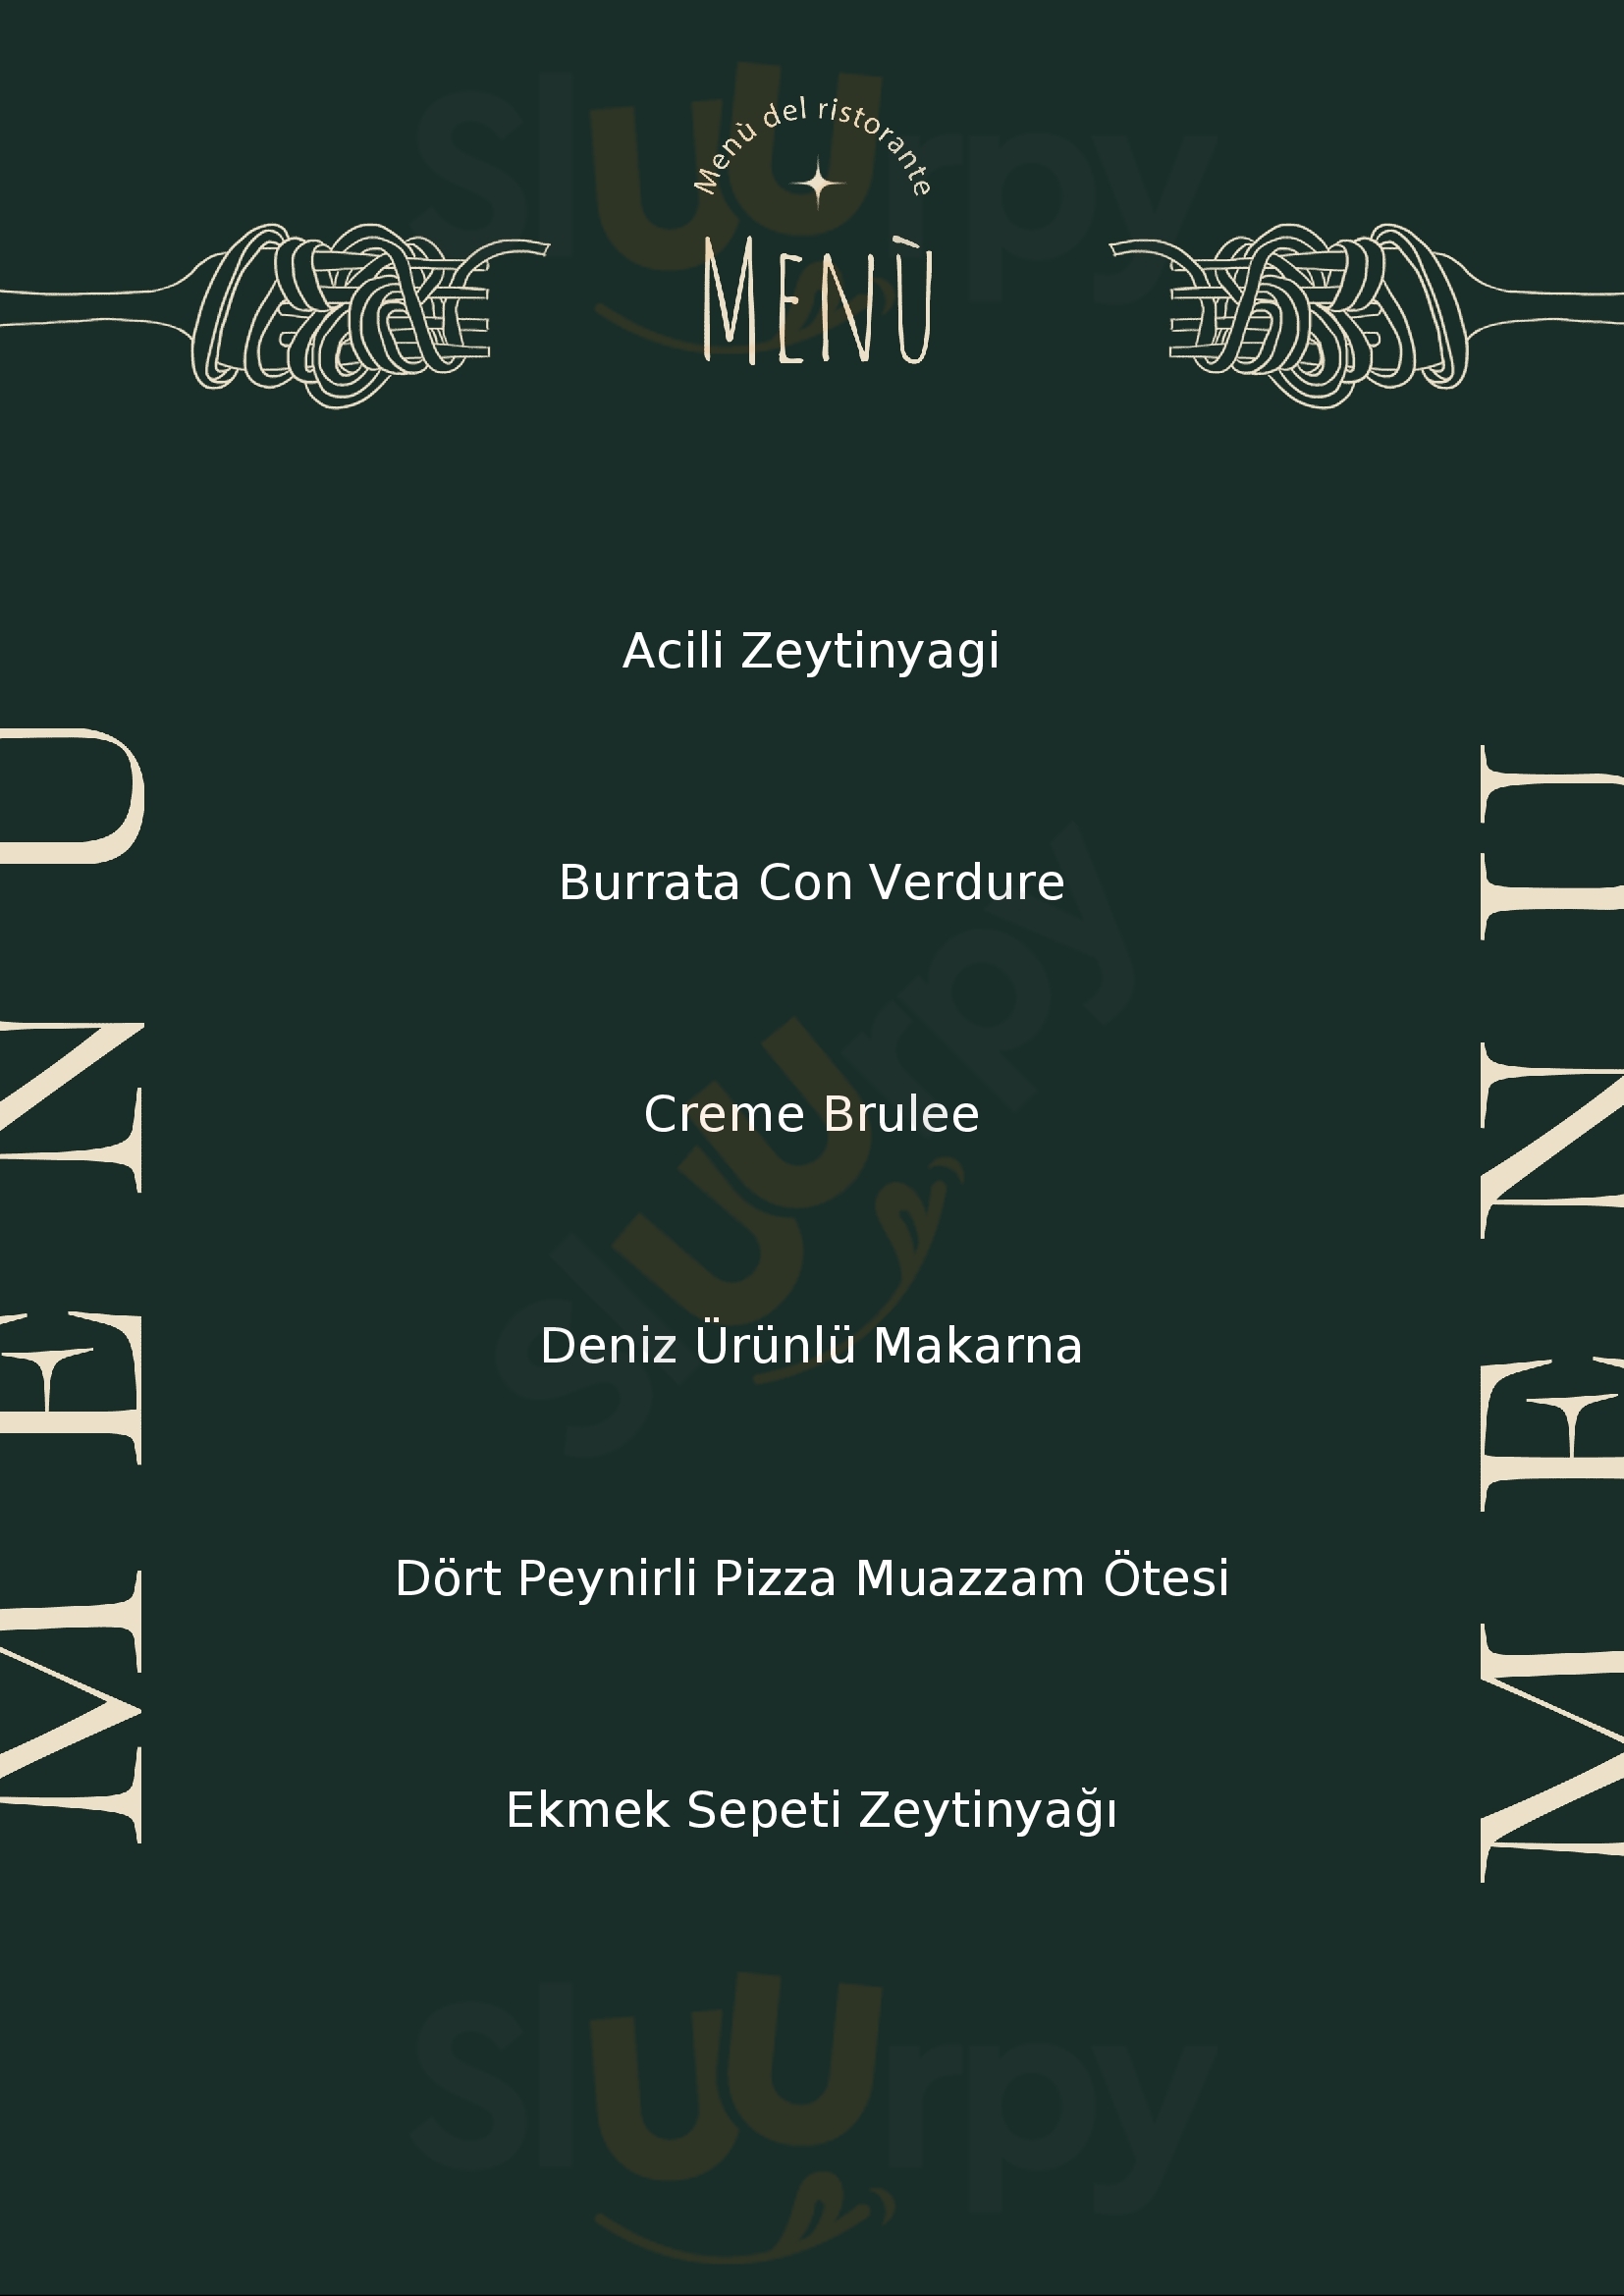 Mezzaluna Kavaklıdere Ankara Menu - 1